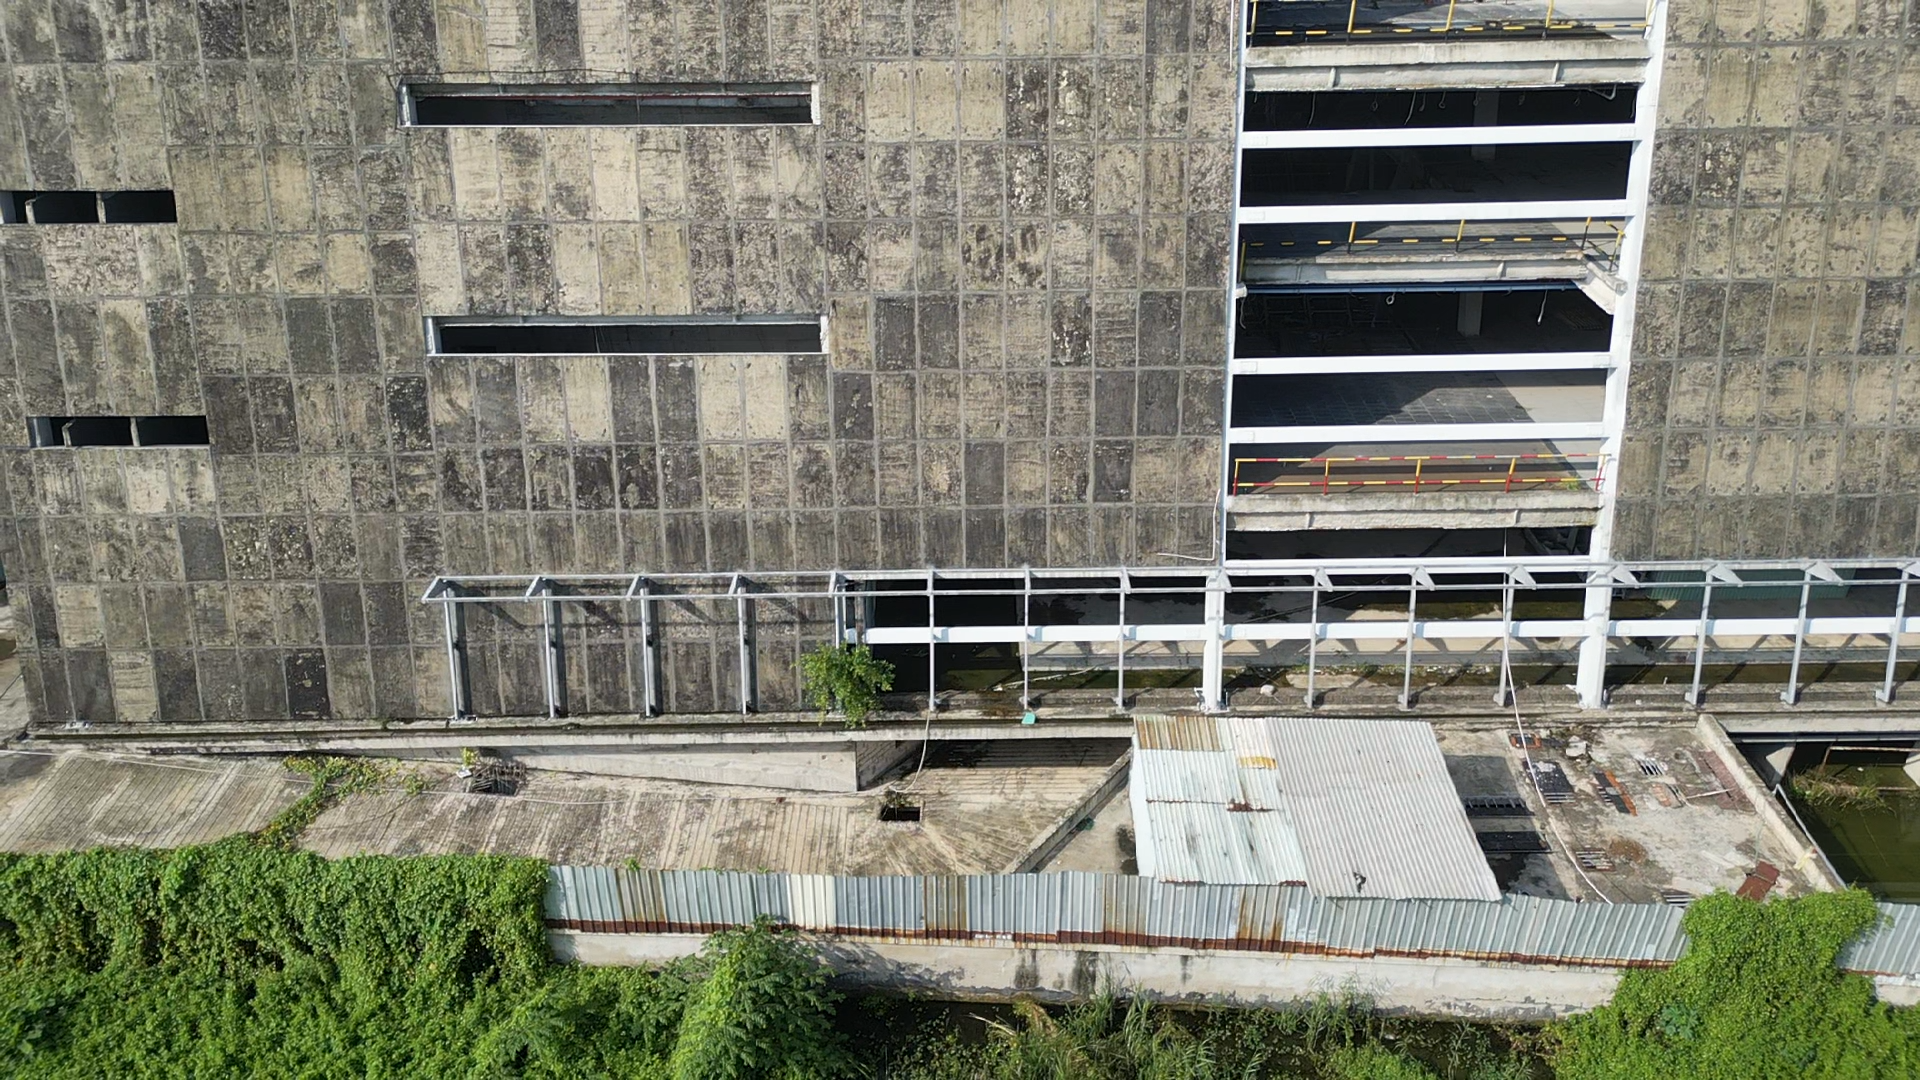 Sau 10 năm khởi công, dự án Trung tâm triển lãm quy hoạch TP Hồ Chí Minh đạt hơn 80% tiến độ, song không thể hoàn thành, công trình hiện như một khối bêtông trơ trọi. Các bề mặt bên ngoài công trình trở nên cũ kỹ, hoang phế, nhuốm màu đen sau thời gian dài bỏ hoang.